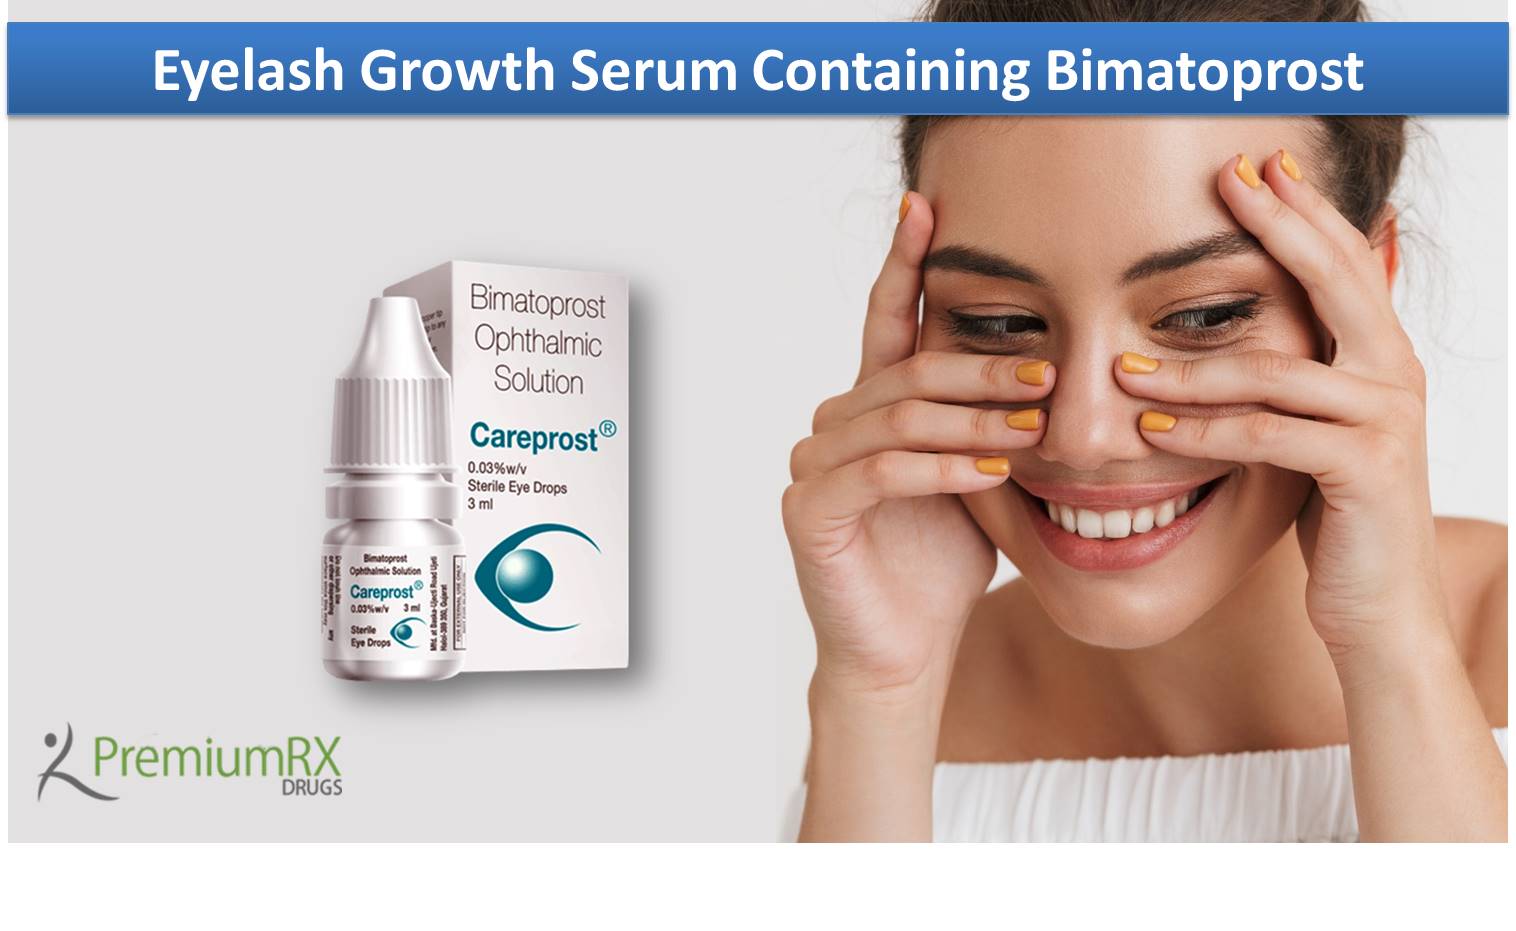 Eyelash Growth Serum Containing Bimatoprost